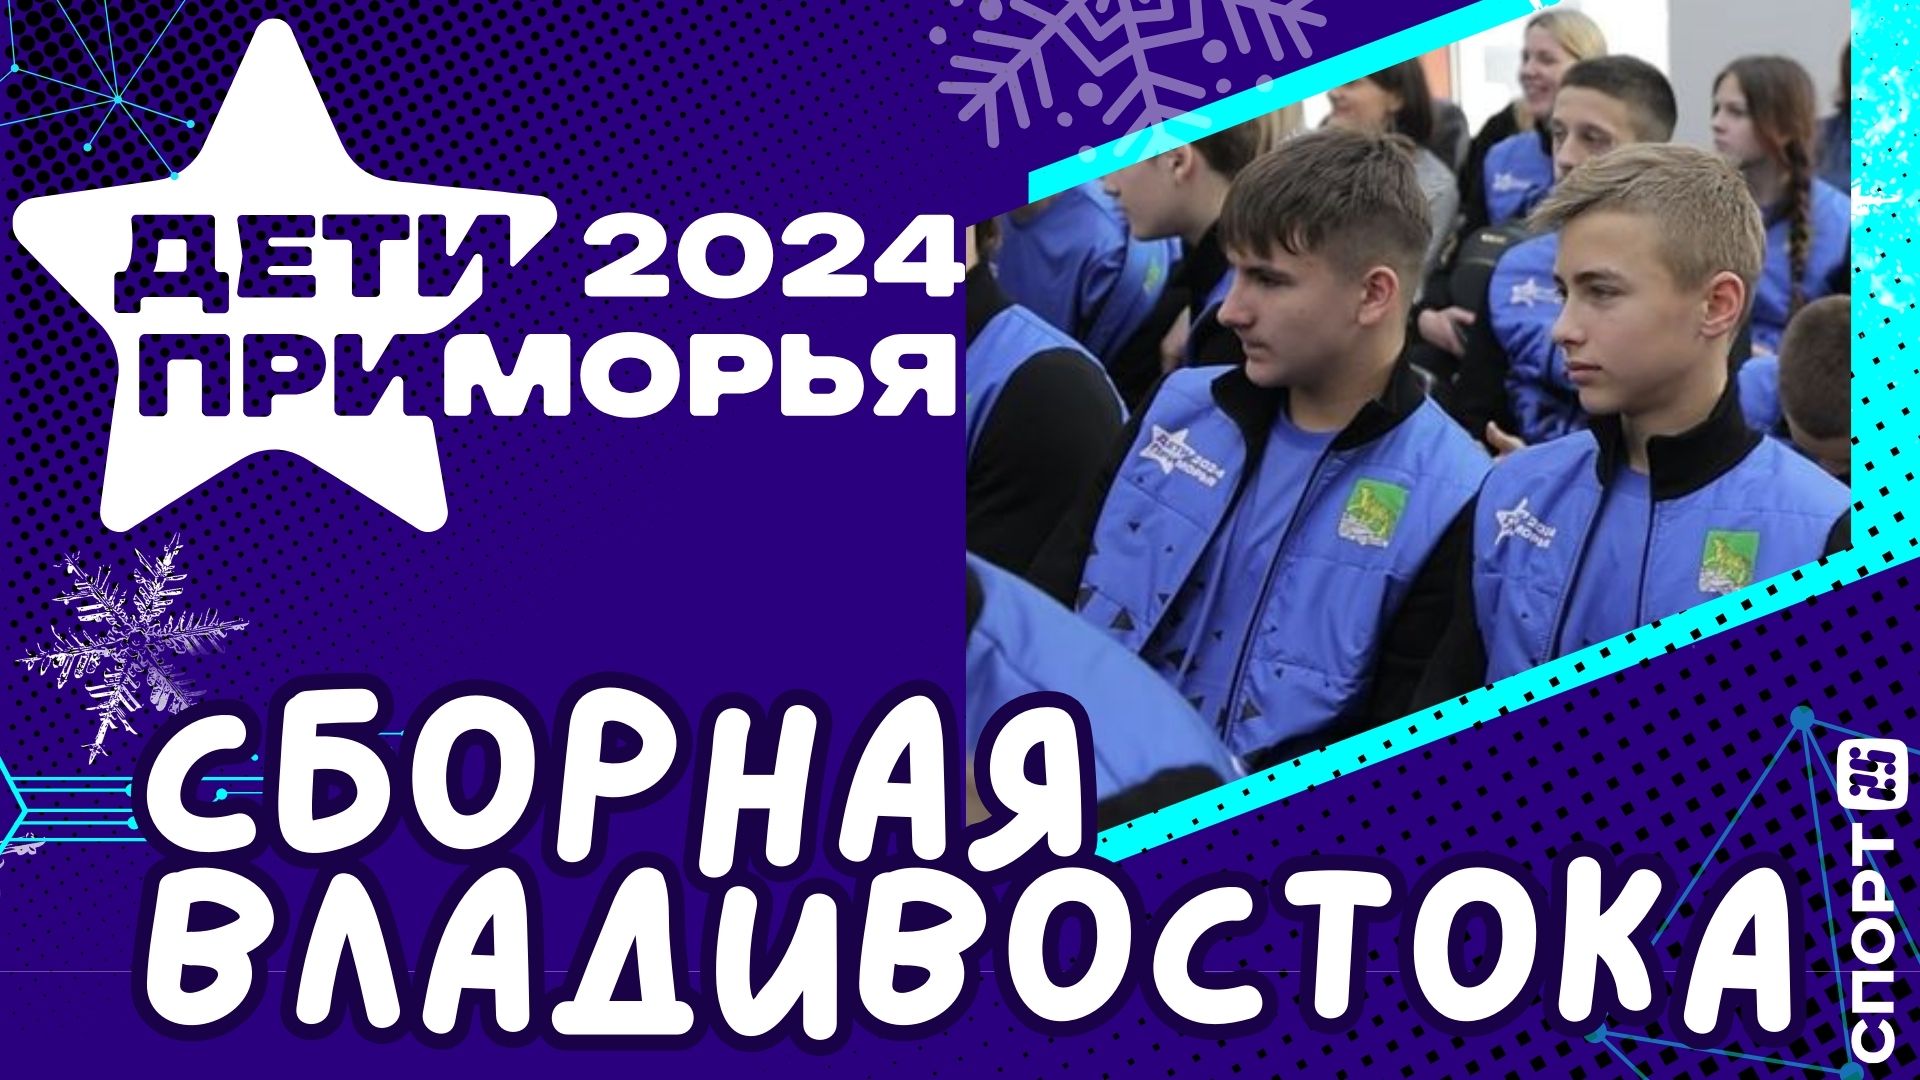 Дети Приморья 2024: представлена сборная Владивостока